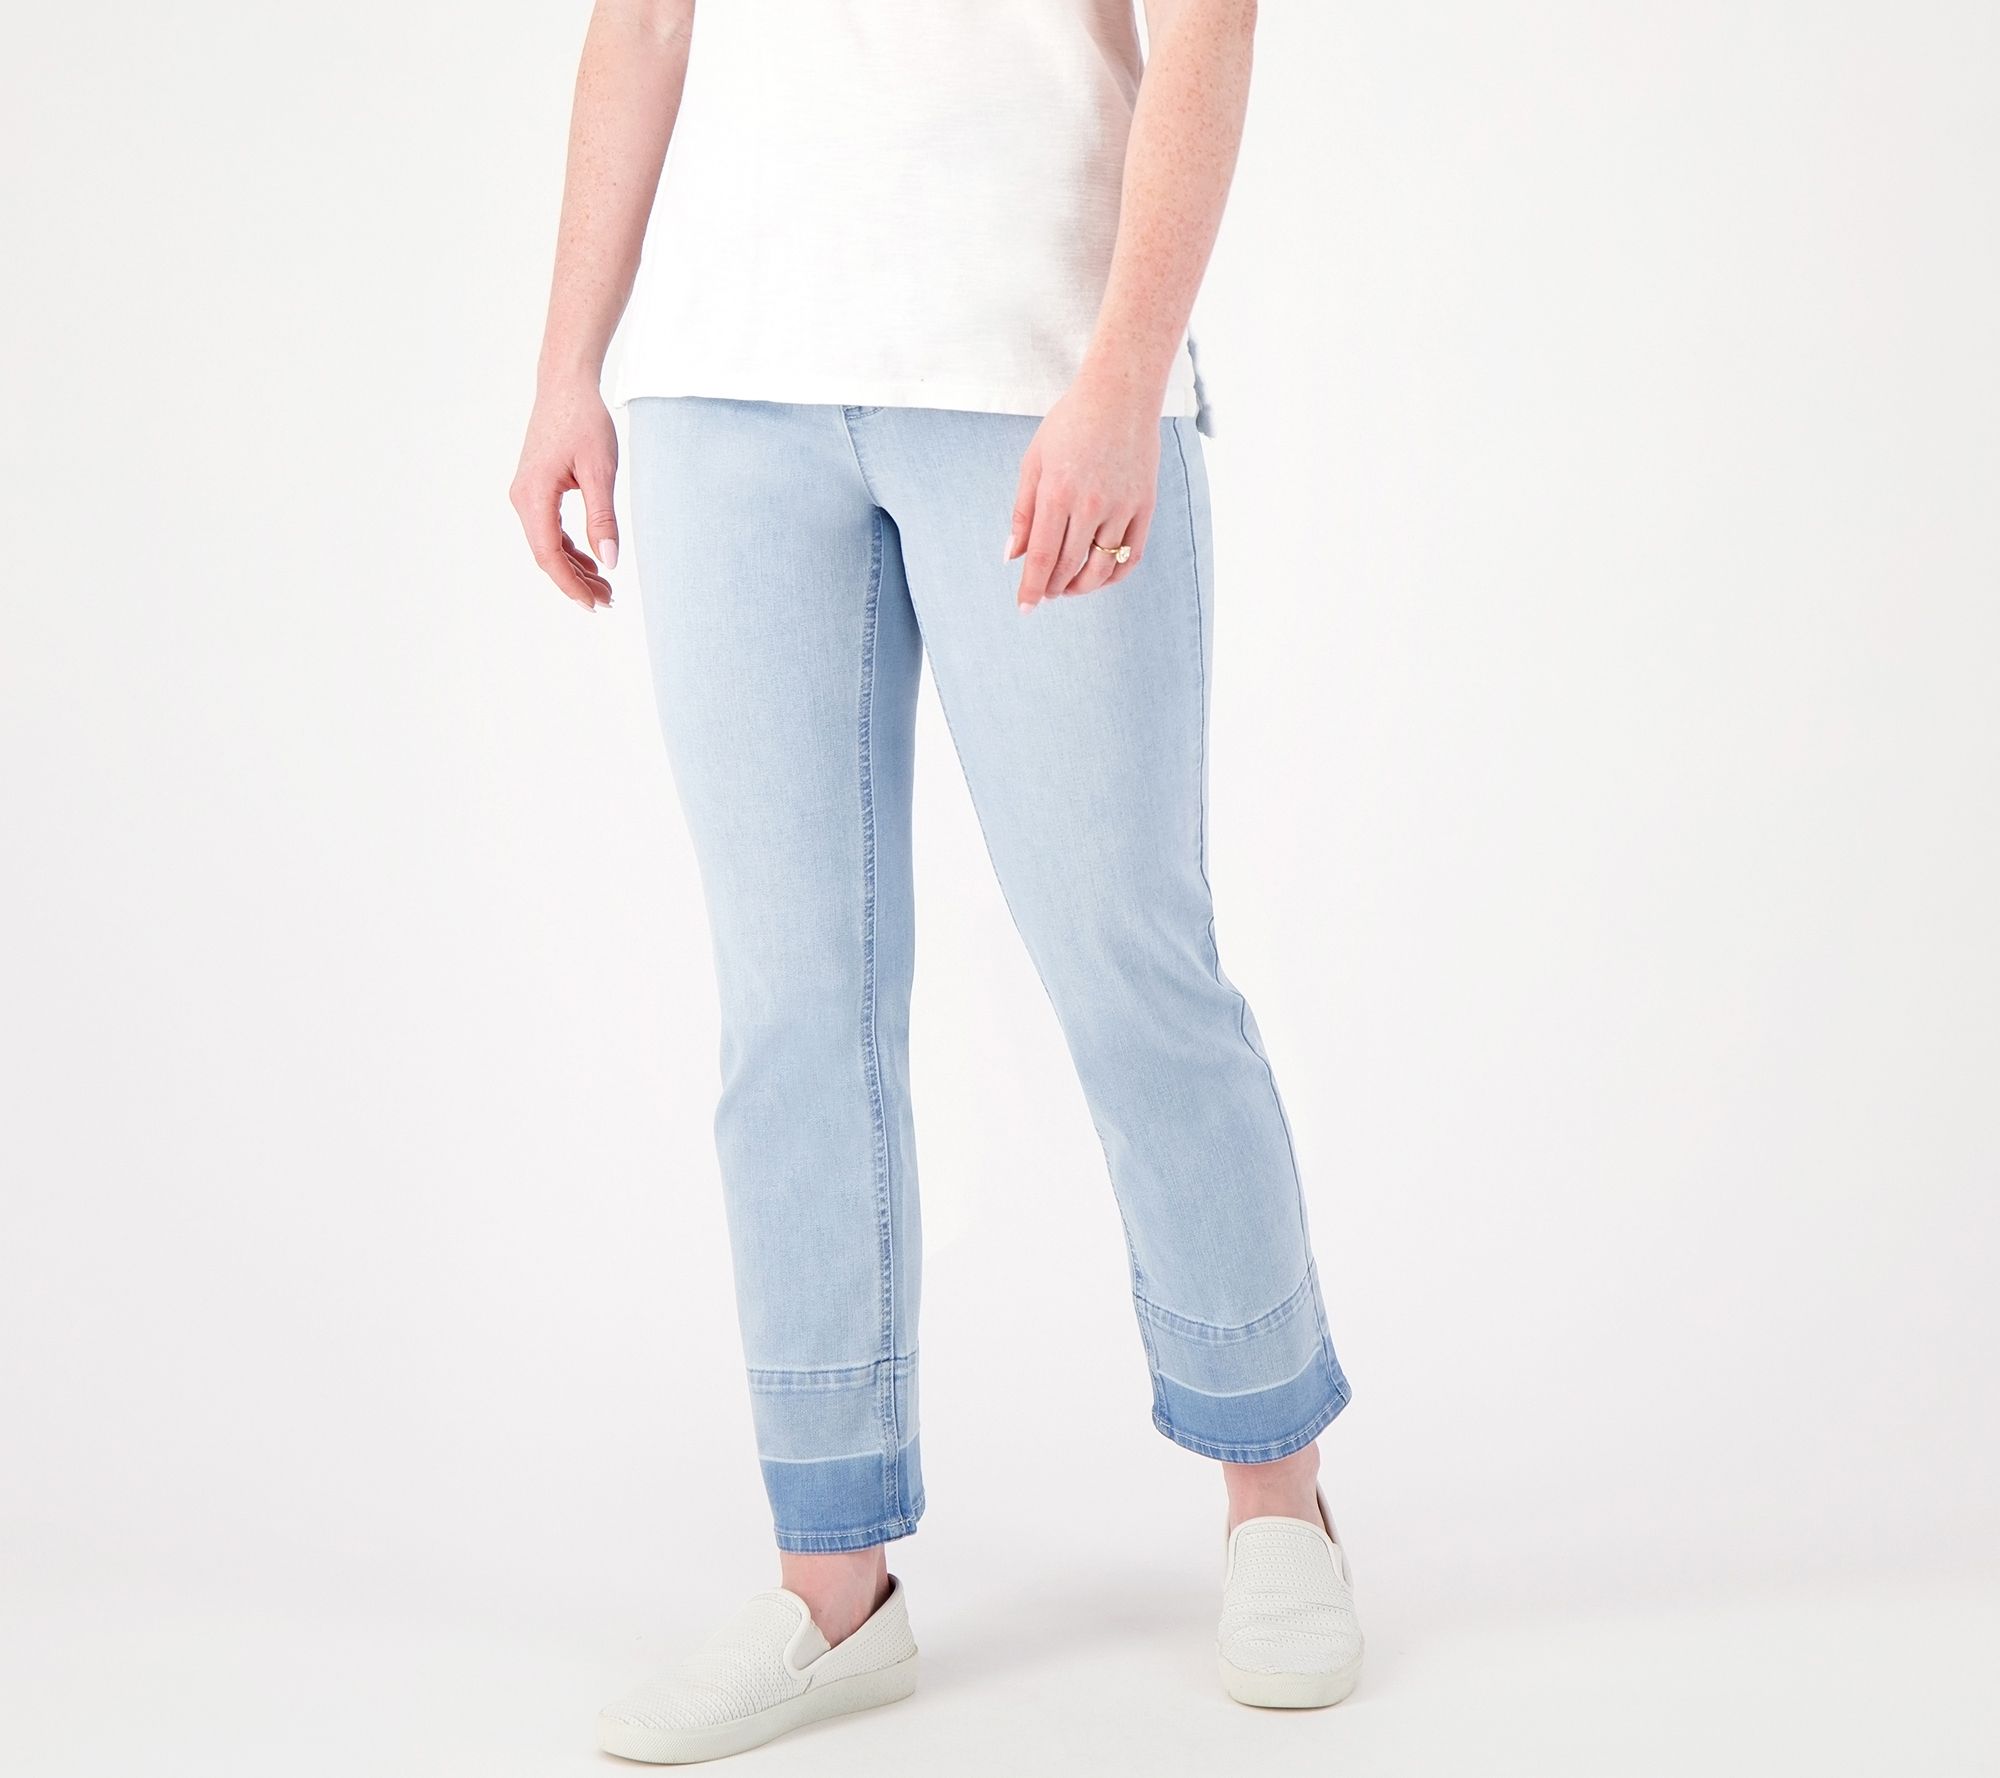 Tall Misses Medium (10-12) - Jeans - Ankle Pants 